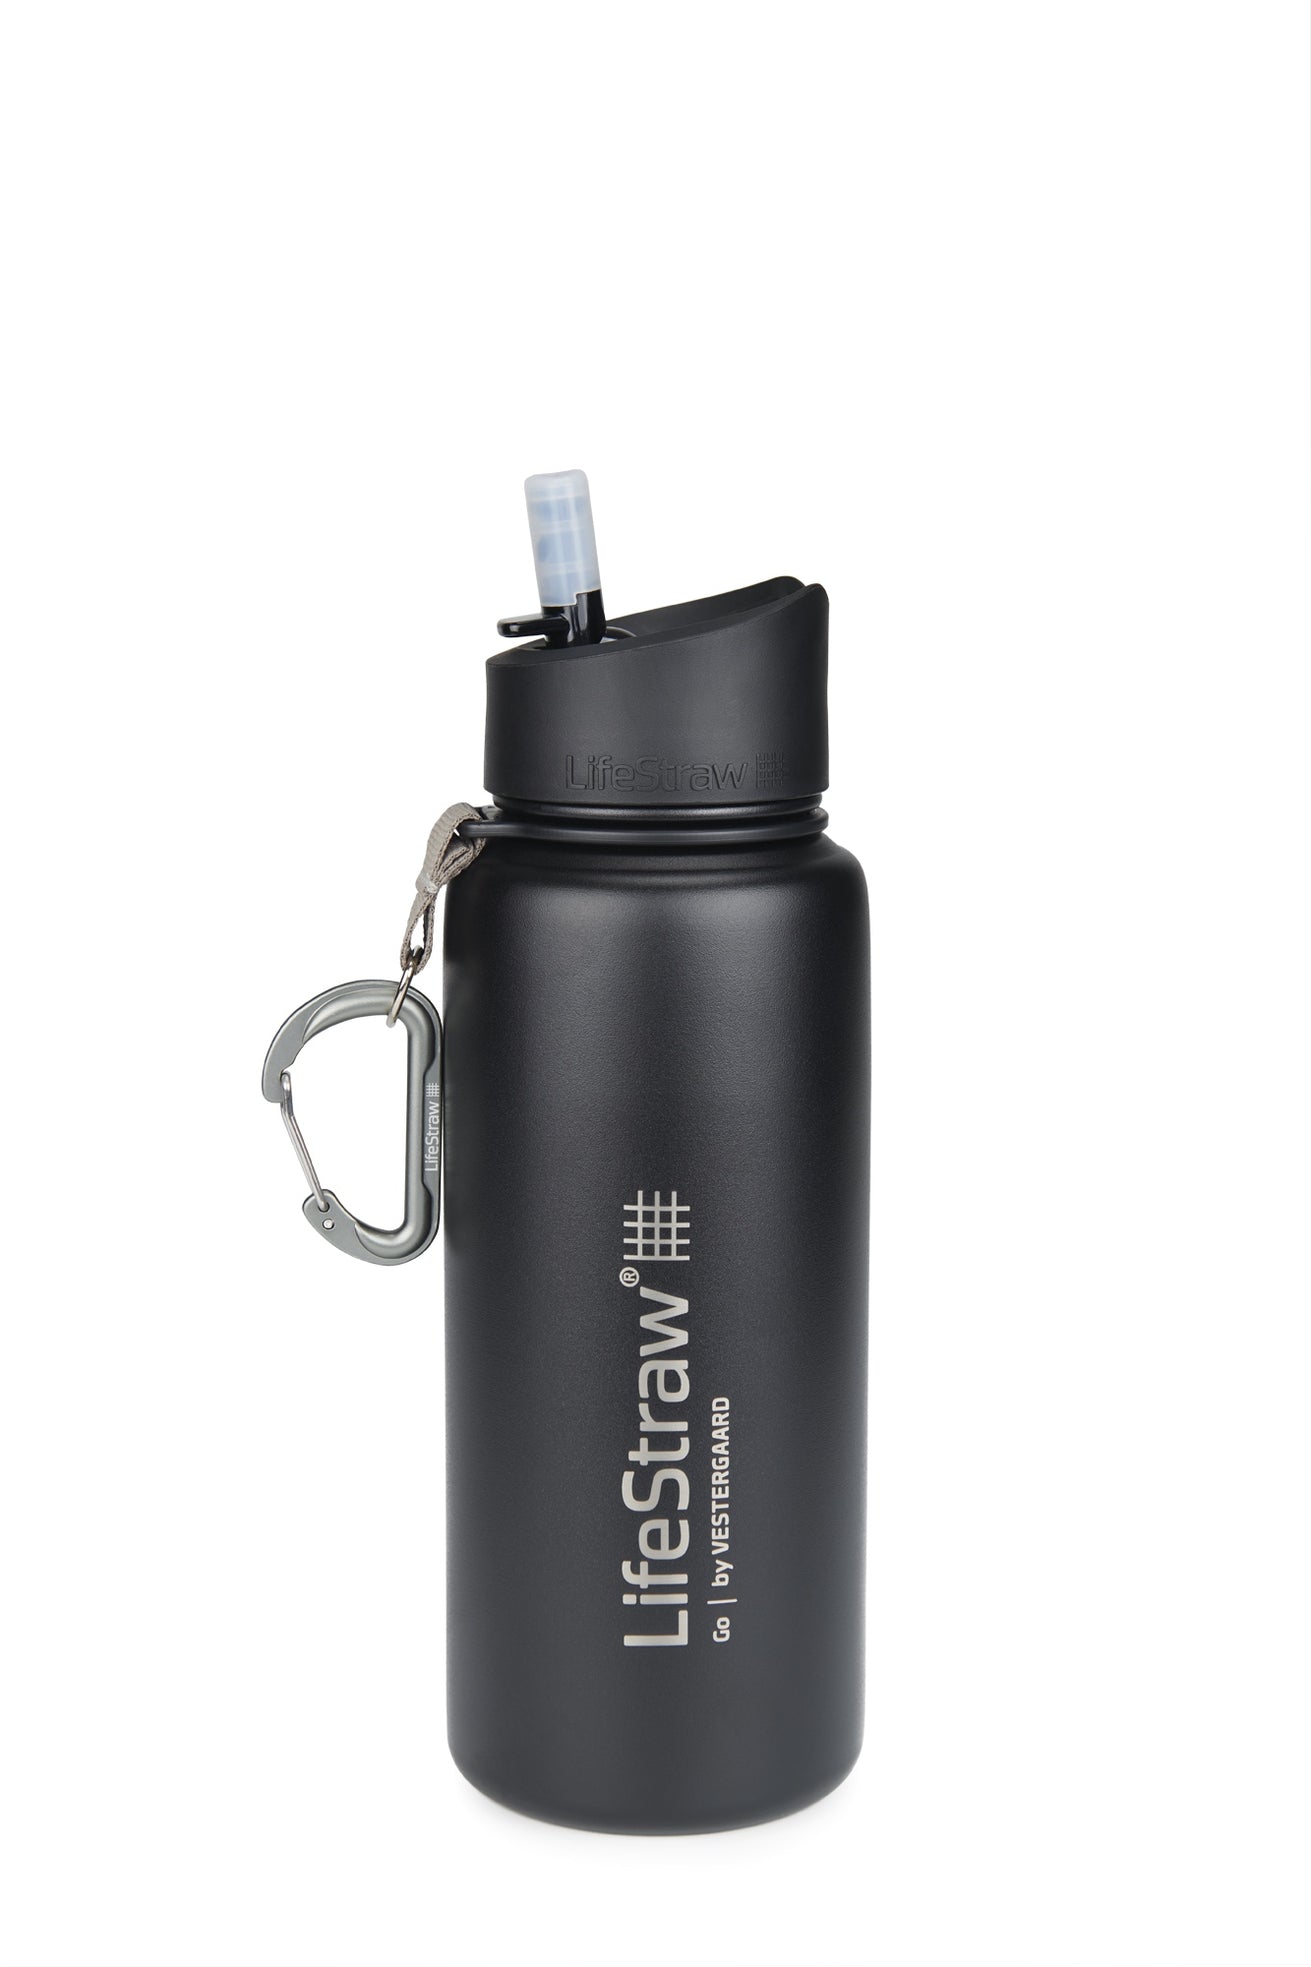 LifeStraw Go Stainless Steel (black) Wasserflasche mit Filter macht aus Schmutzwasser Trinkwasser